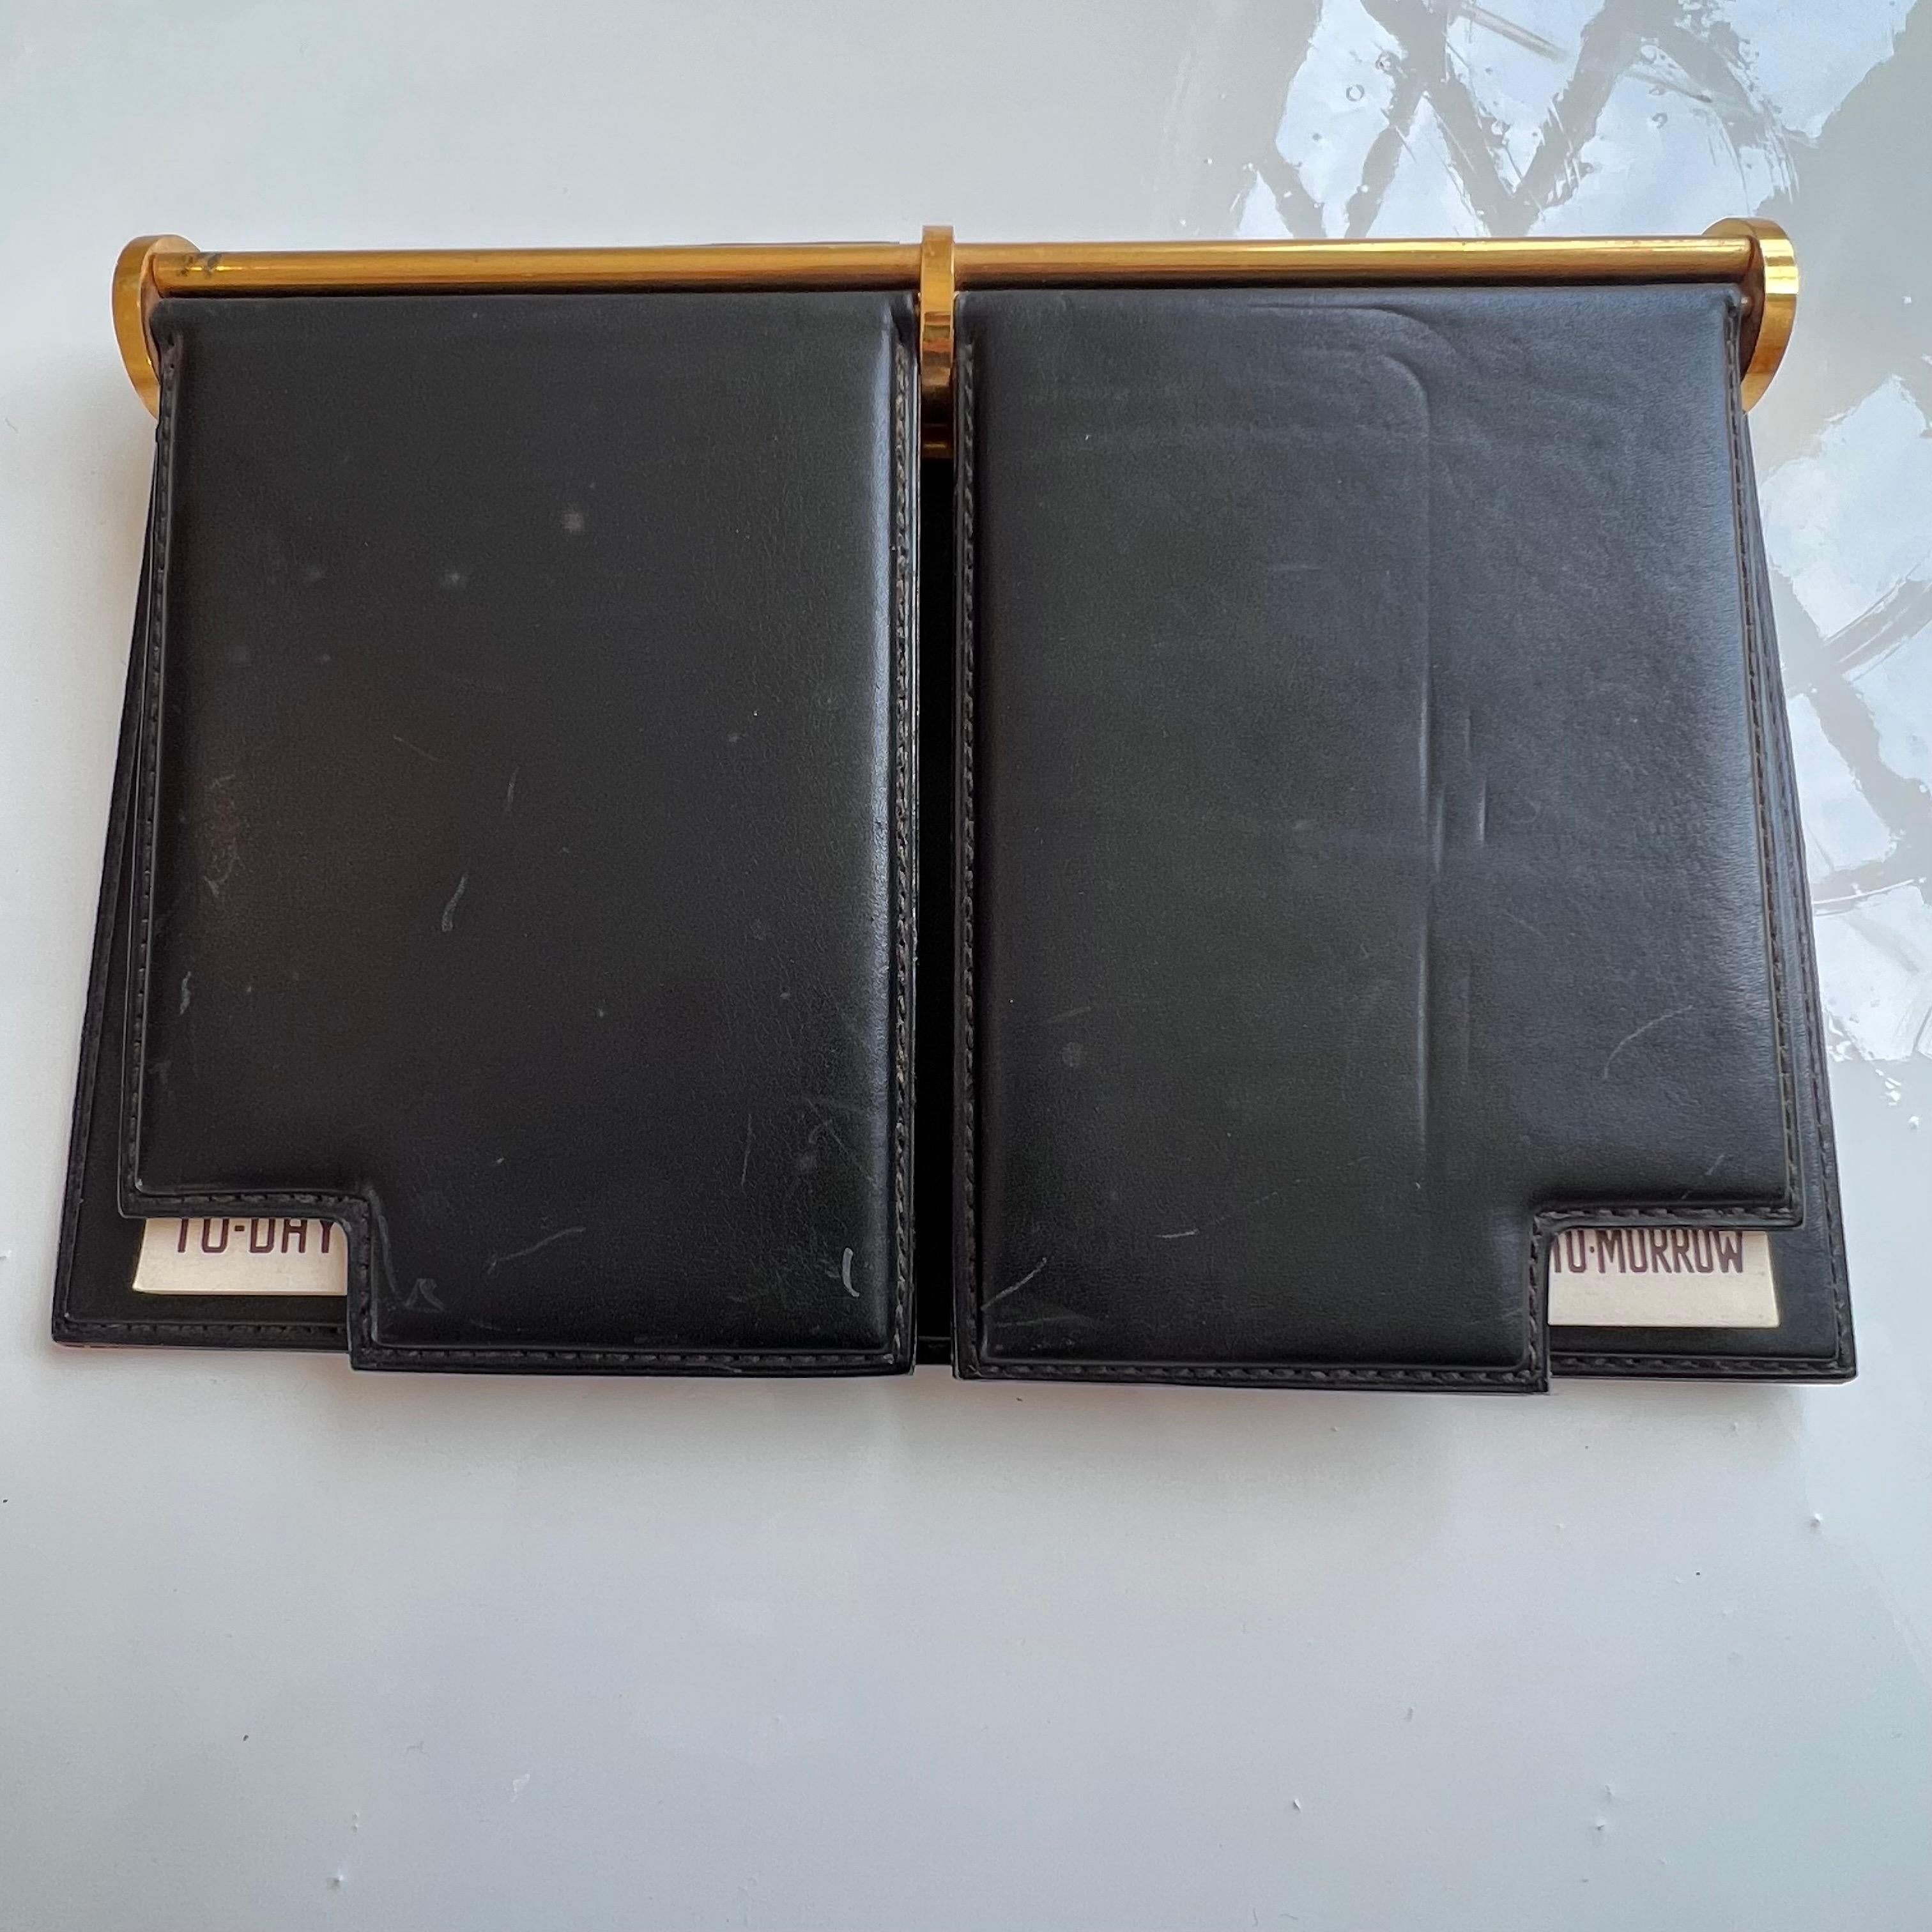 Schicker Gucci-Schreibtischplaner aus schwarzem Leder mit Messingeinbänden, der zwei Notizblöcke mit den Titeln 